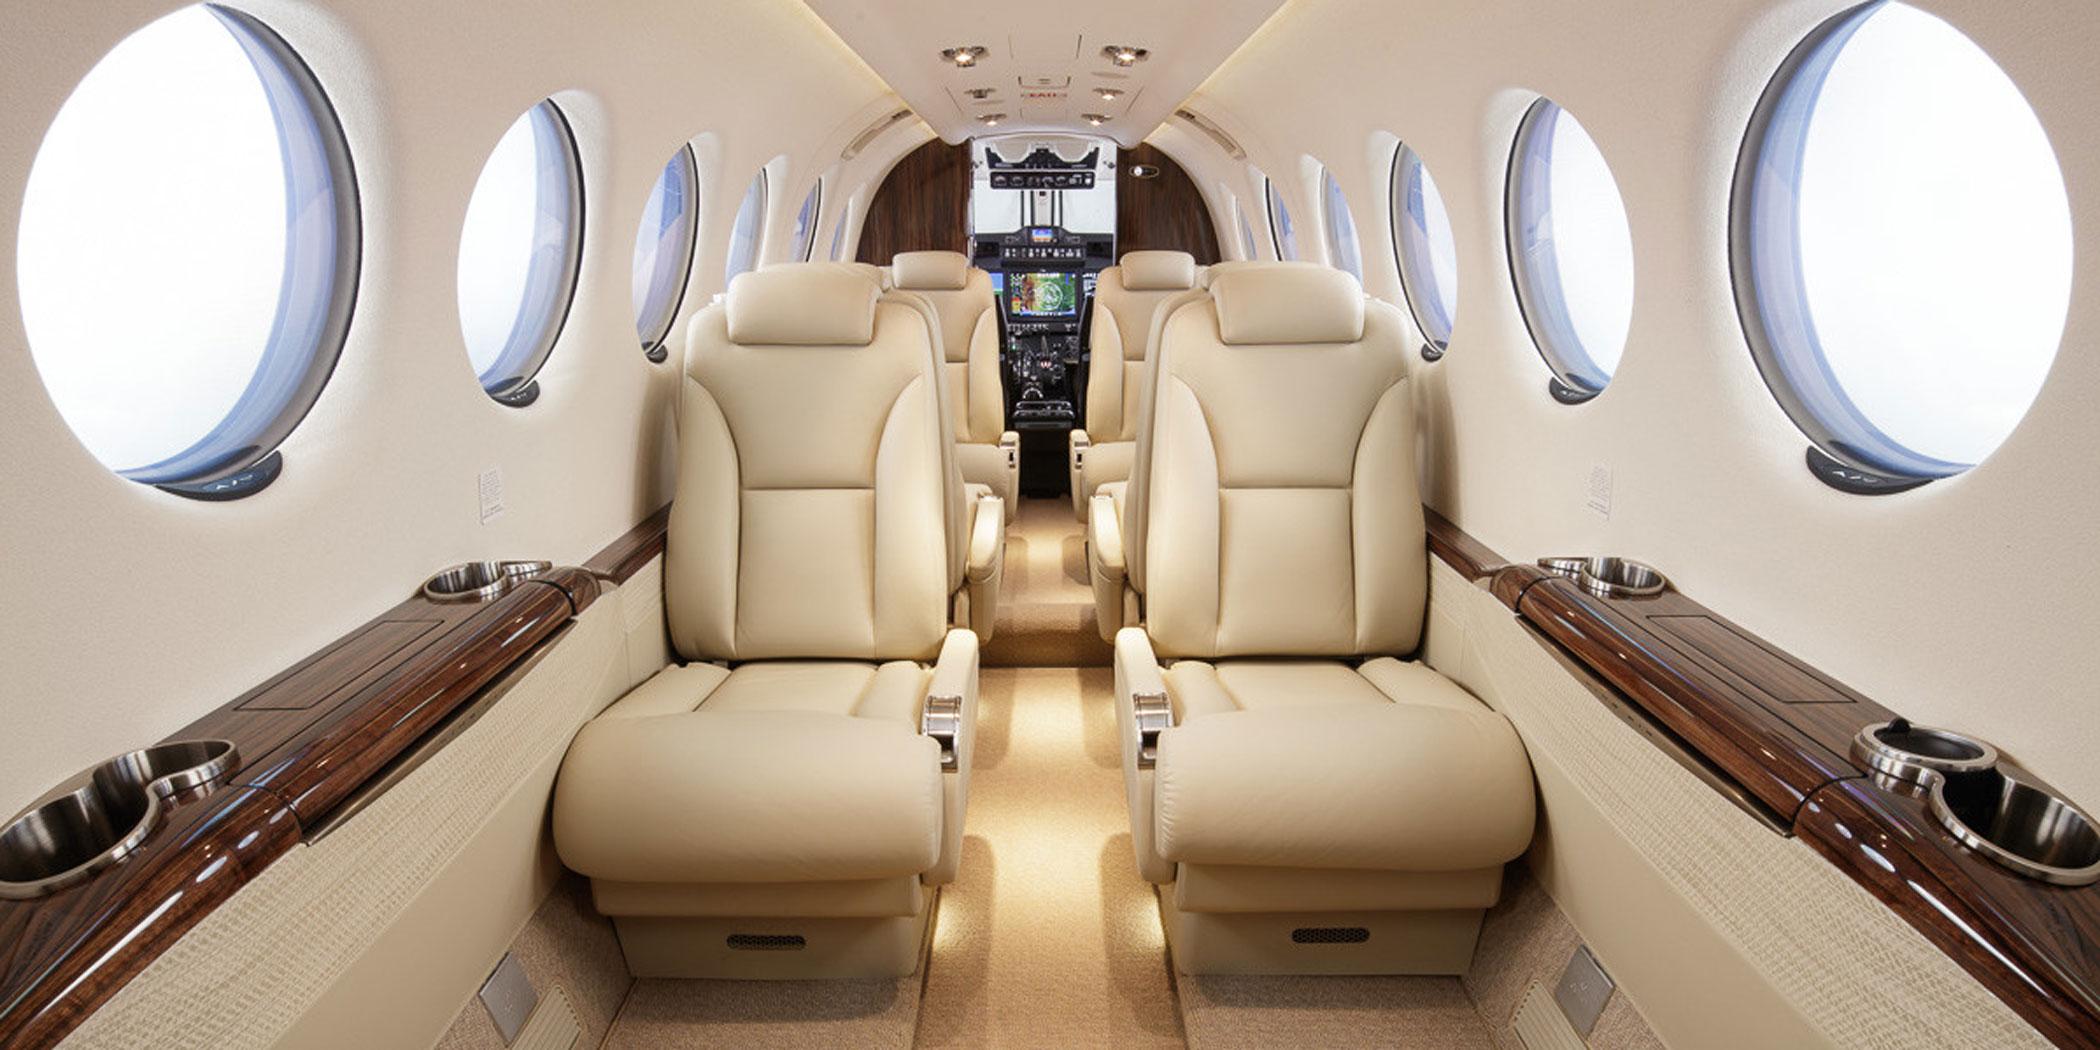 King Air 350 interior